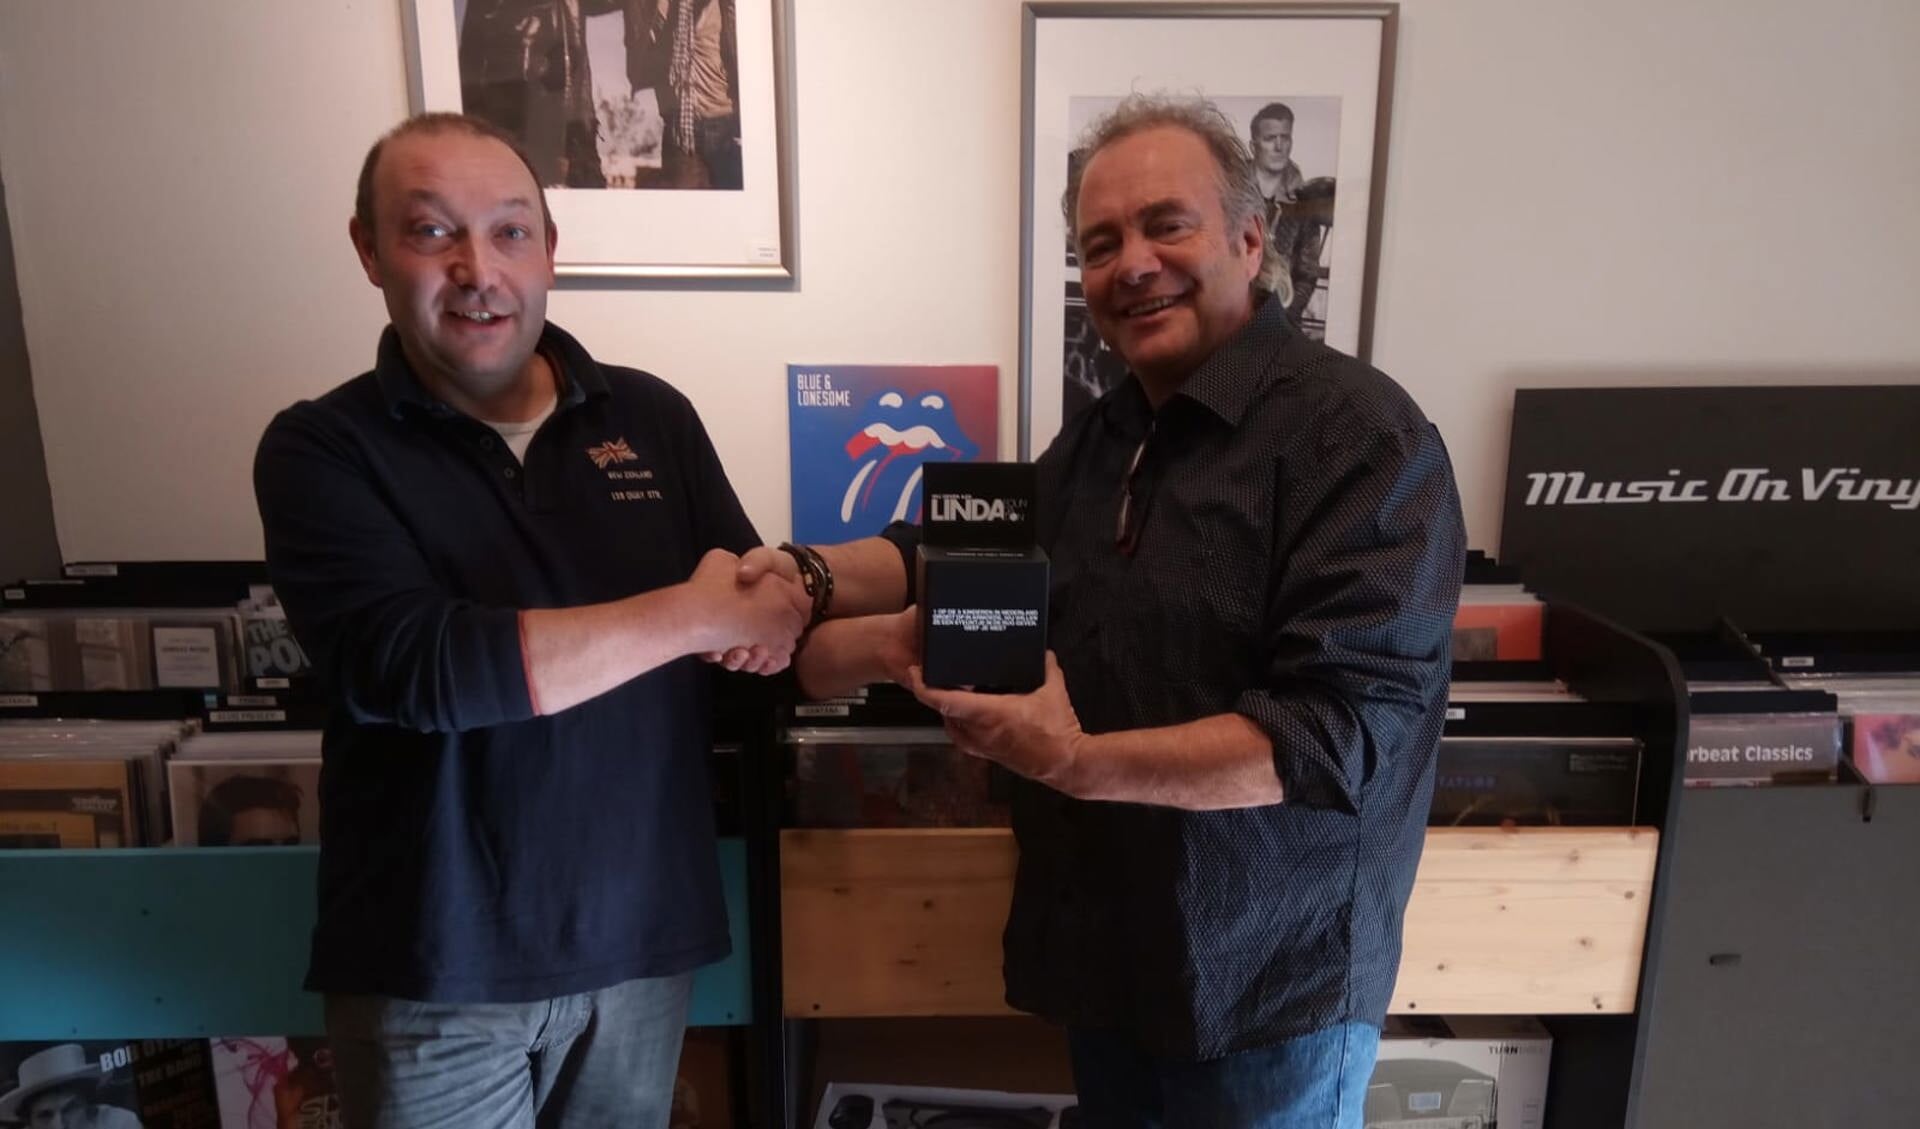 Frank Koning (rechts) reikt een donatiebox van de Linda Foundation uit aan ondernemer Joost Bart, eigenaar van de winkel bmm games n’ vinyl aan de Breestraat 140 te Beverwijk.